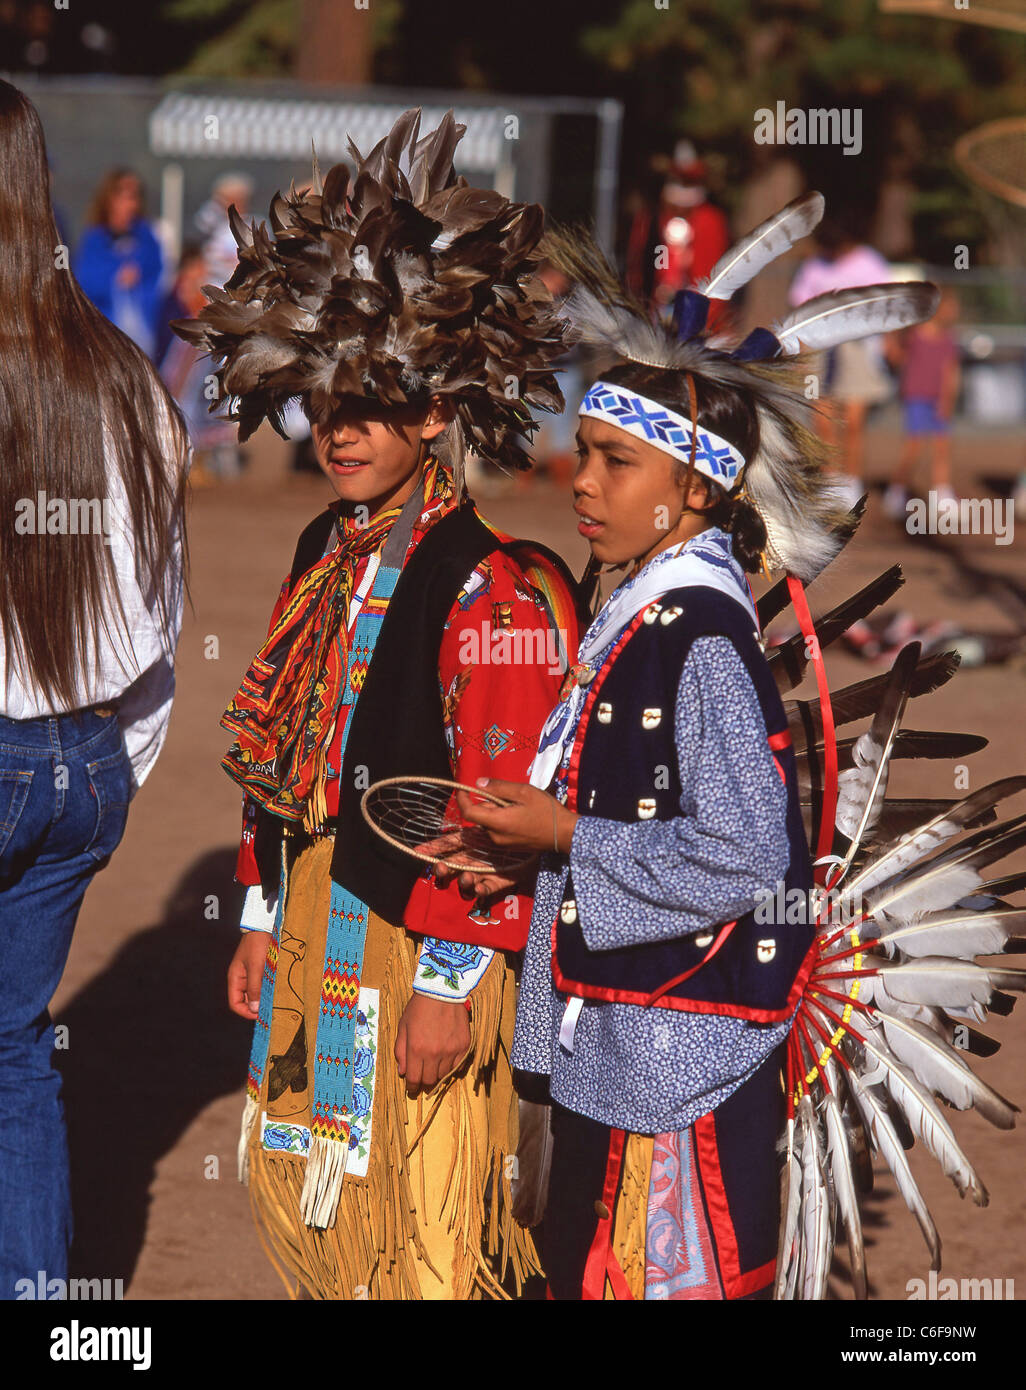 Niños vestidos con traje nativo, Nevada, Estados Unidos de América Fotografía de stock -